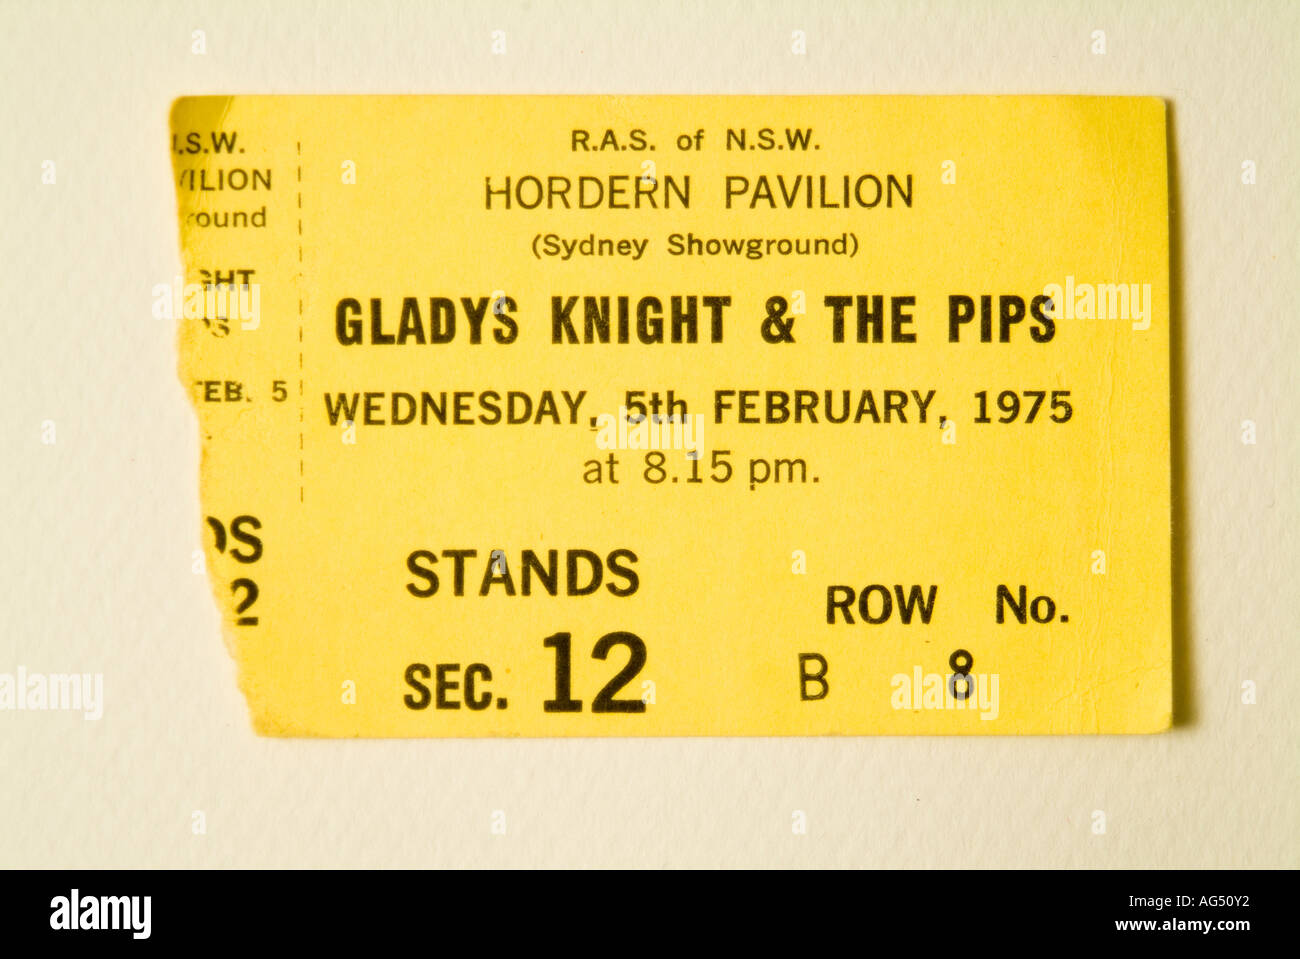 Une Gladys Knight et les pépins du billet de concert de rock and roll des années 1970 Banque D'Images